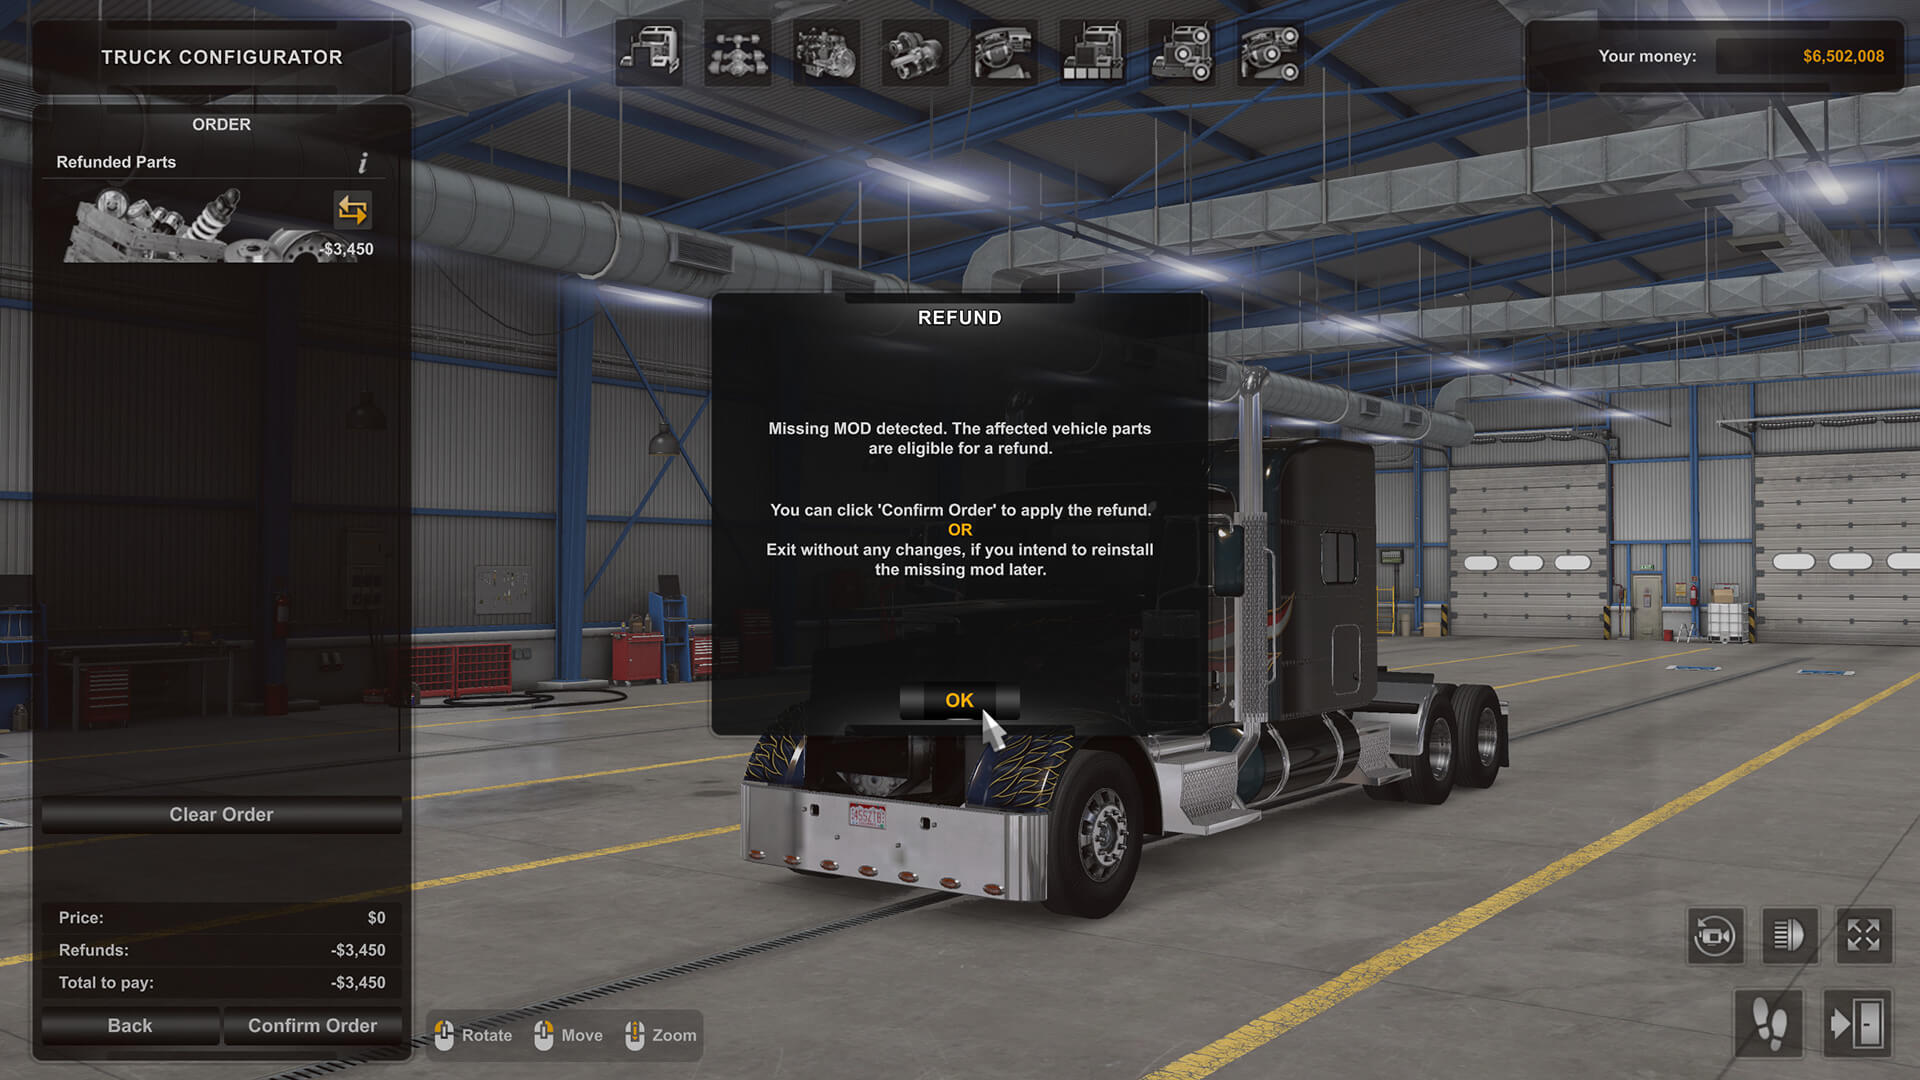 actualización 1.44 de American Truck Simulator